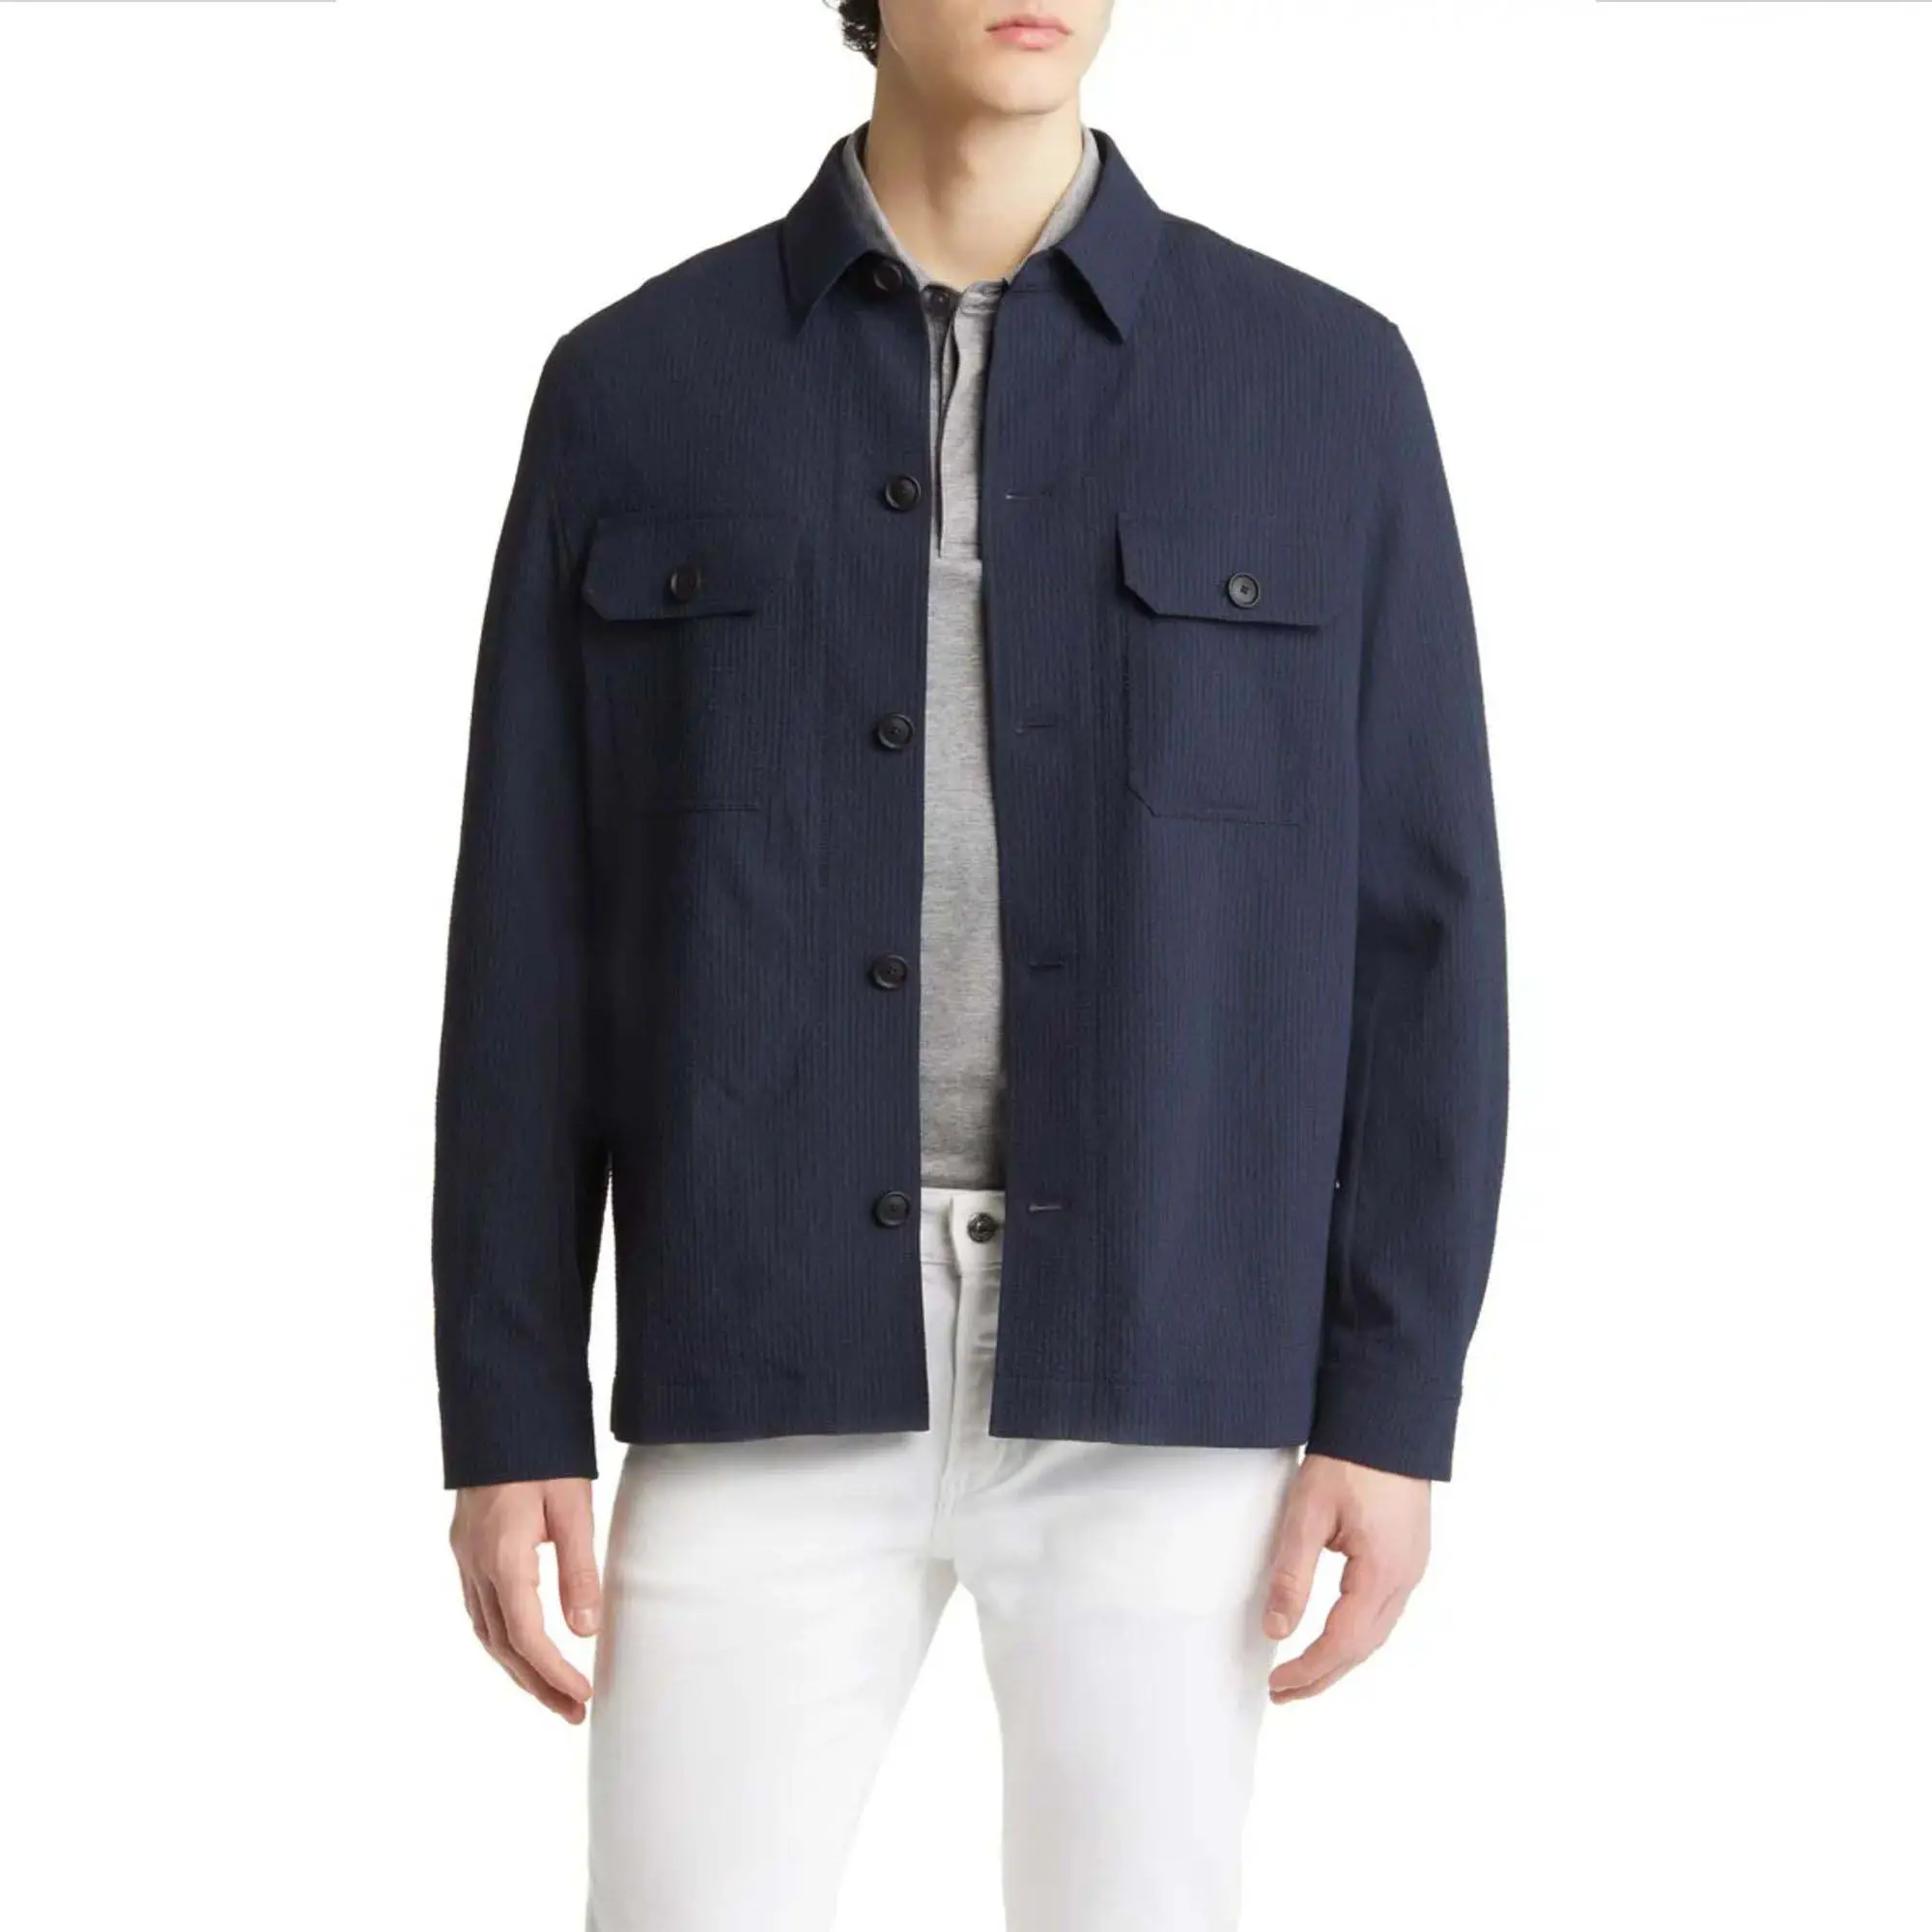 Куртка стеганая с фланелевой подкладкой и стеганой подкладкой для весны мужская легкая фланелевая хлопковая оболочка